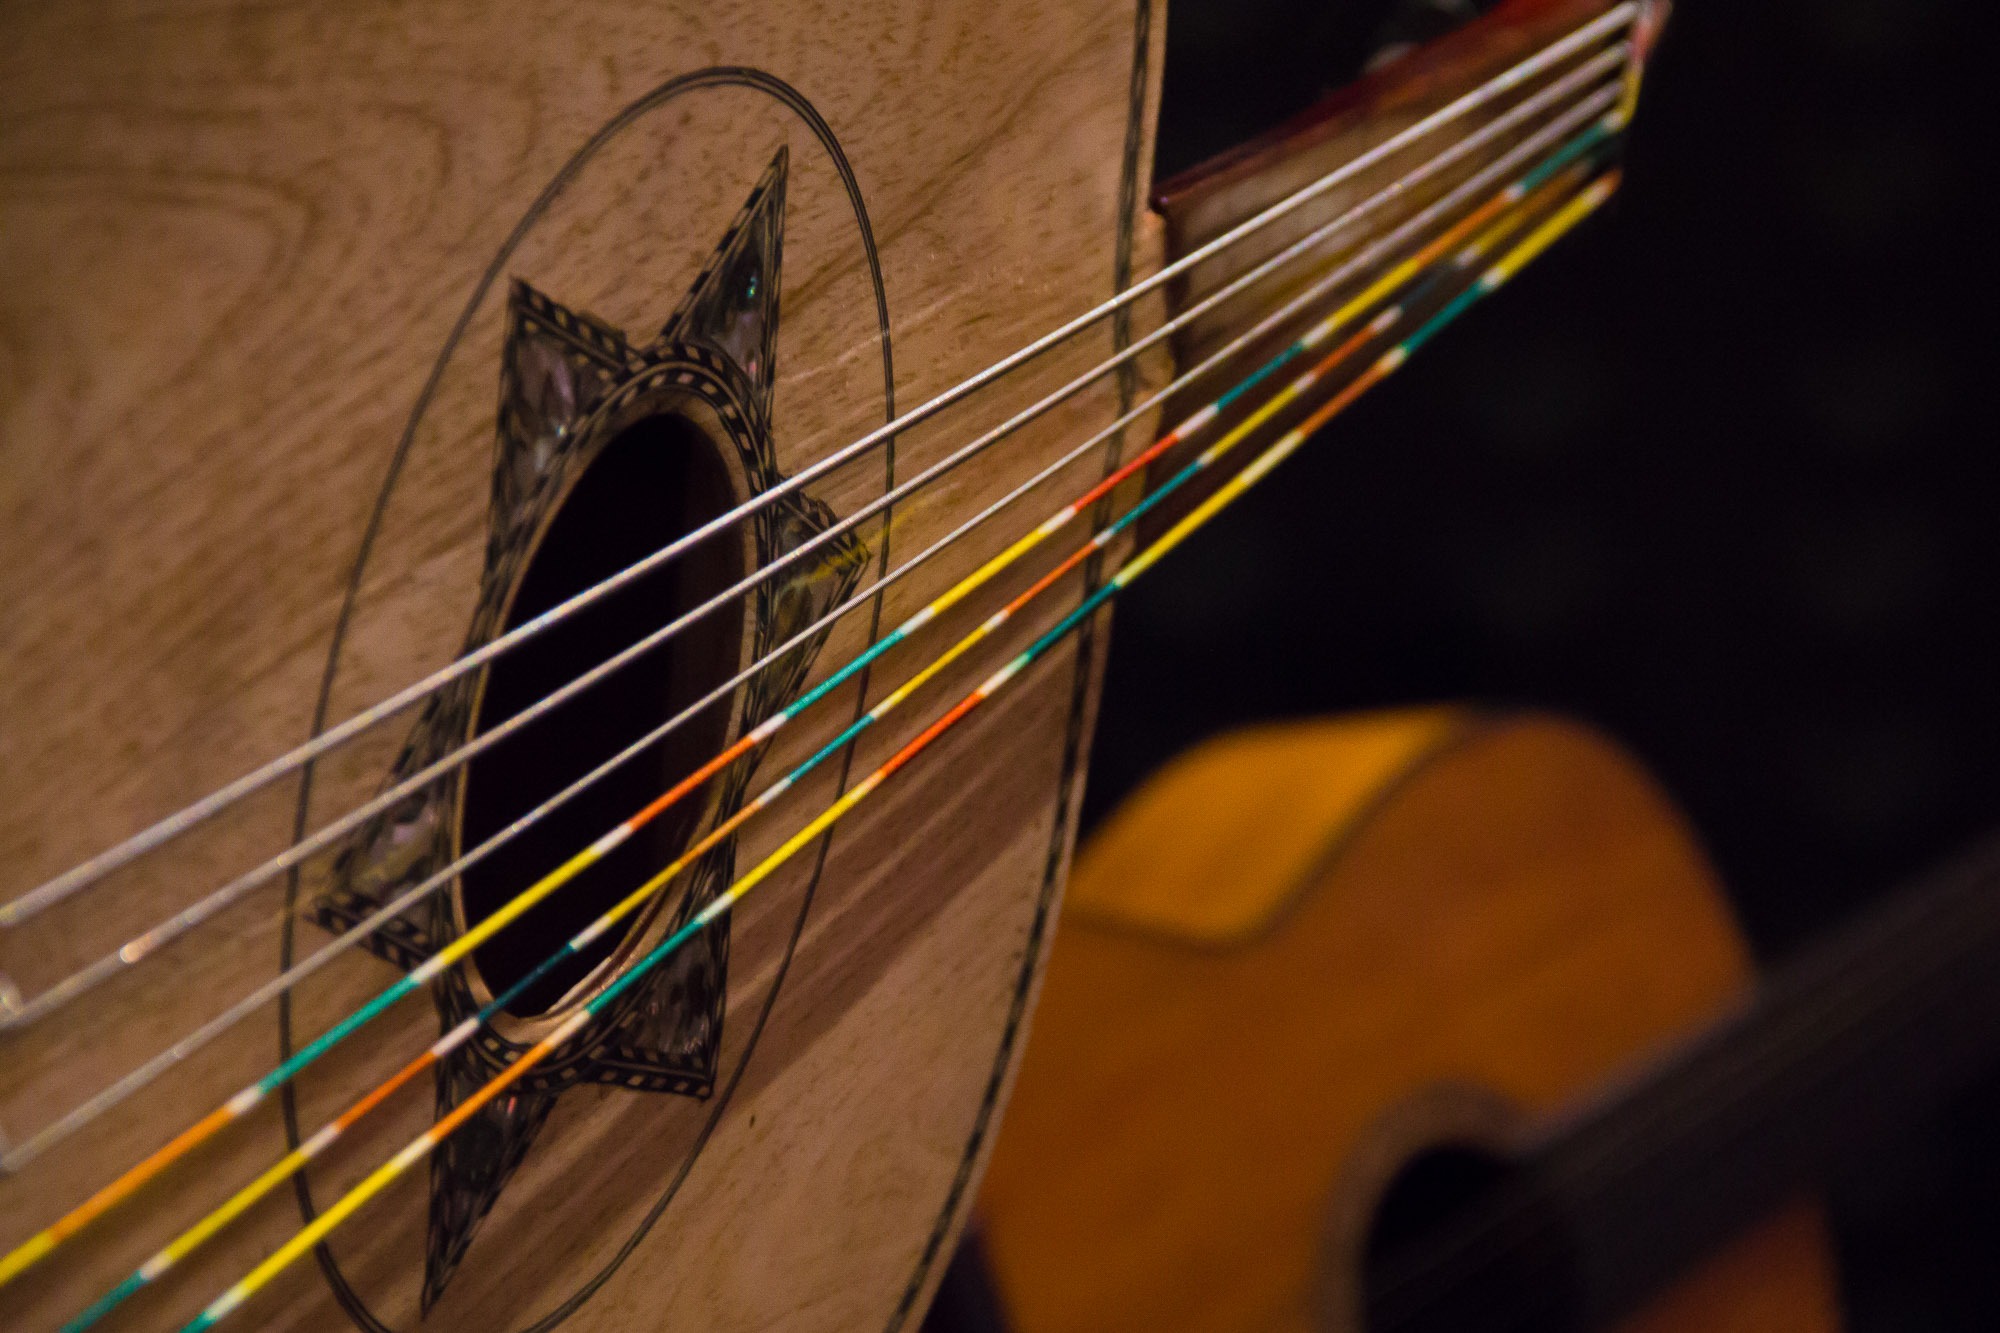 Das cordas do violÃ£o, flui uma mÃºsica colorida